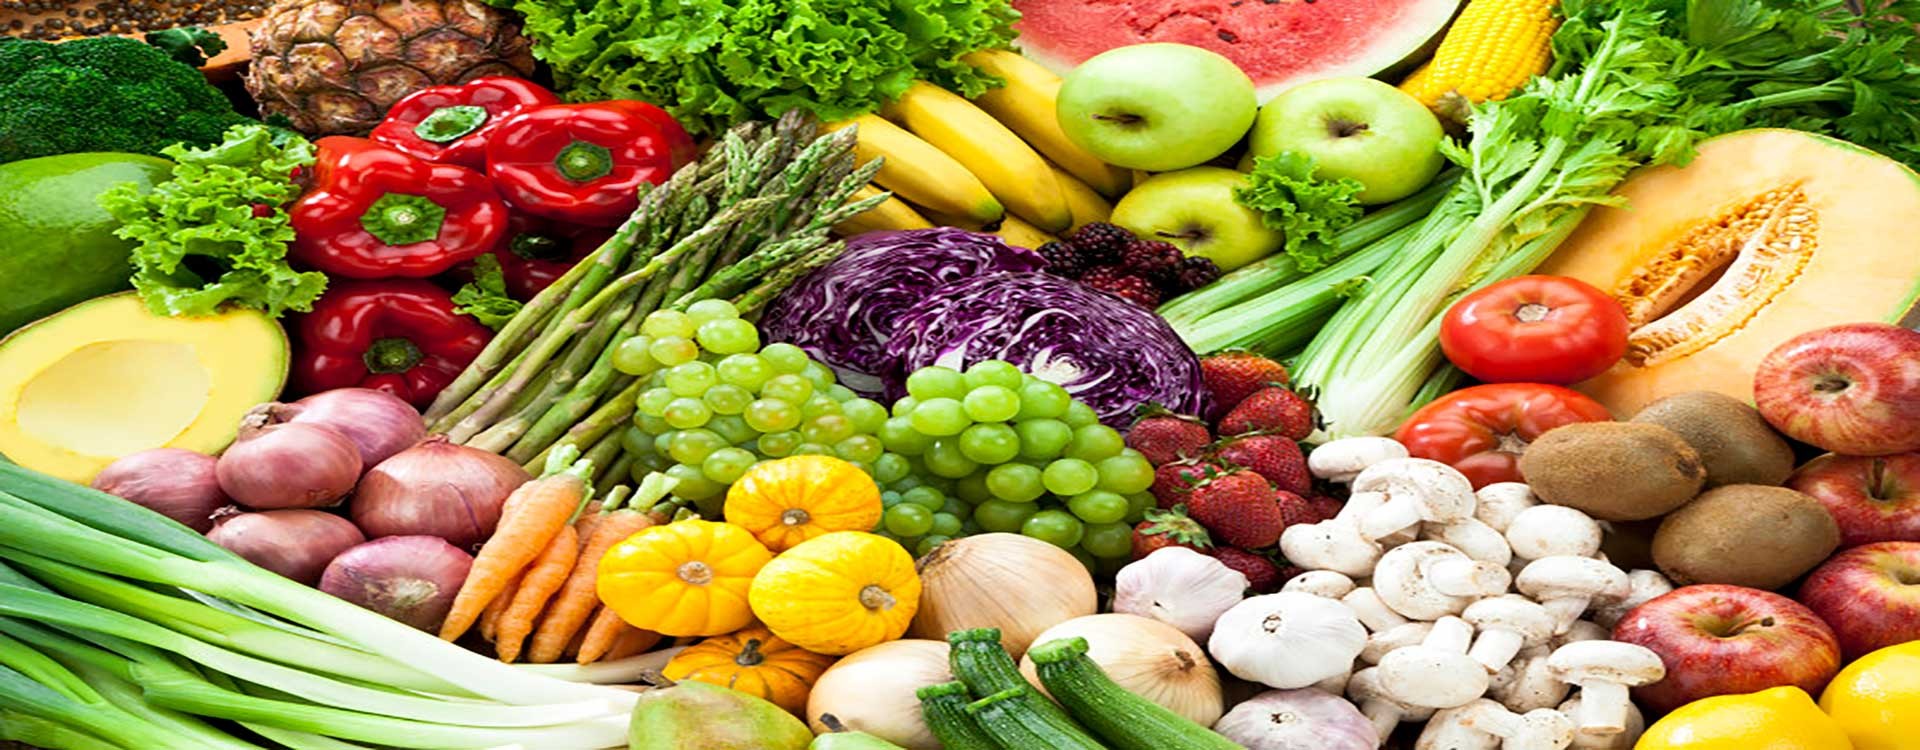 خواص ضد سرطانی میوه و سبزیجات